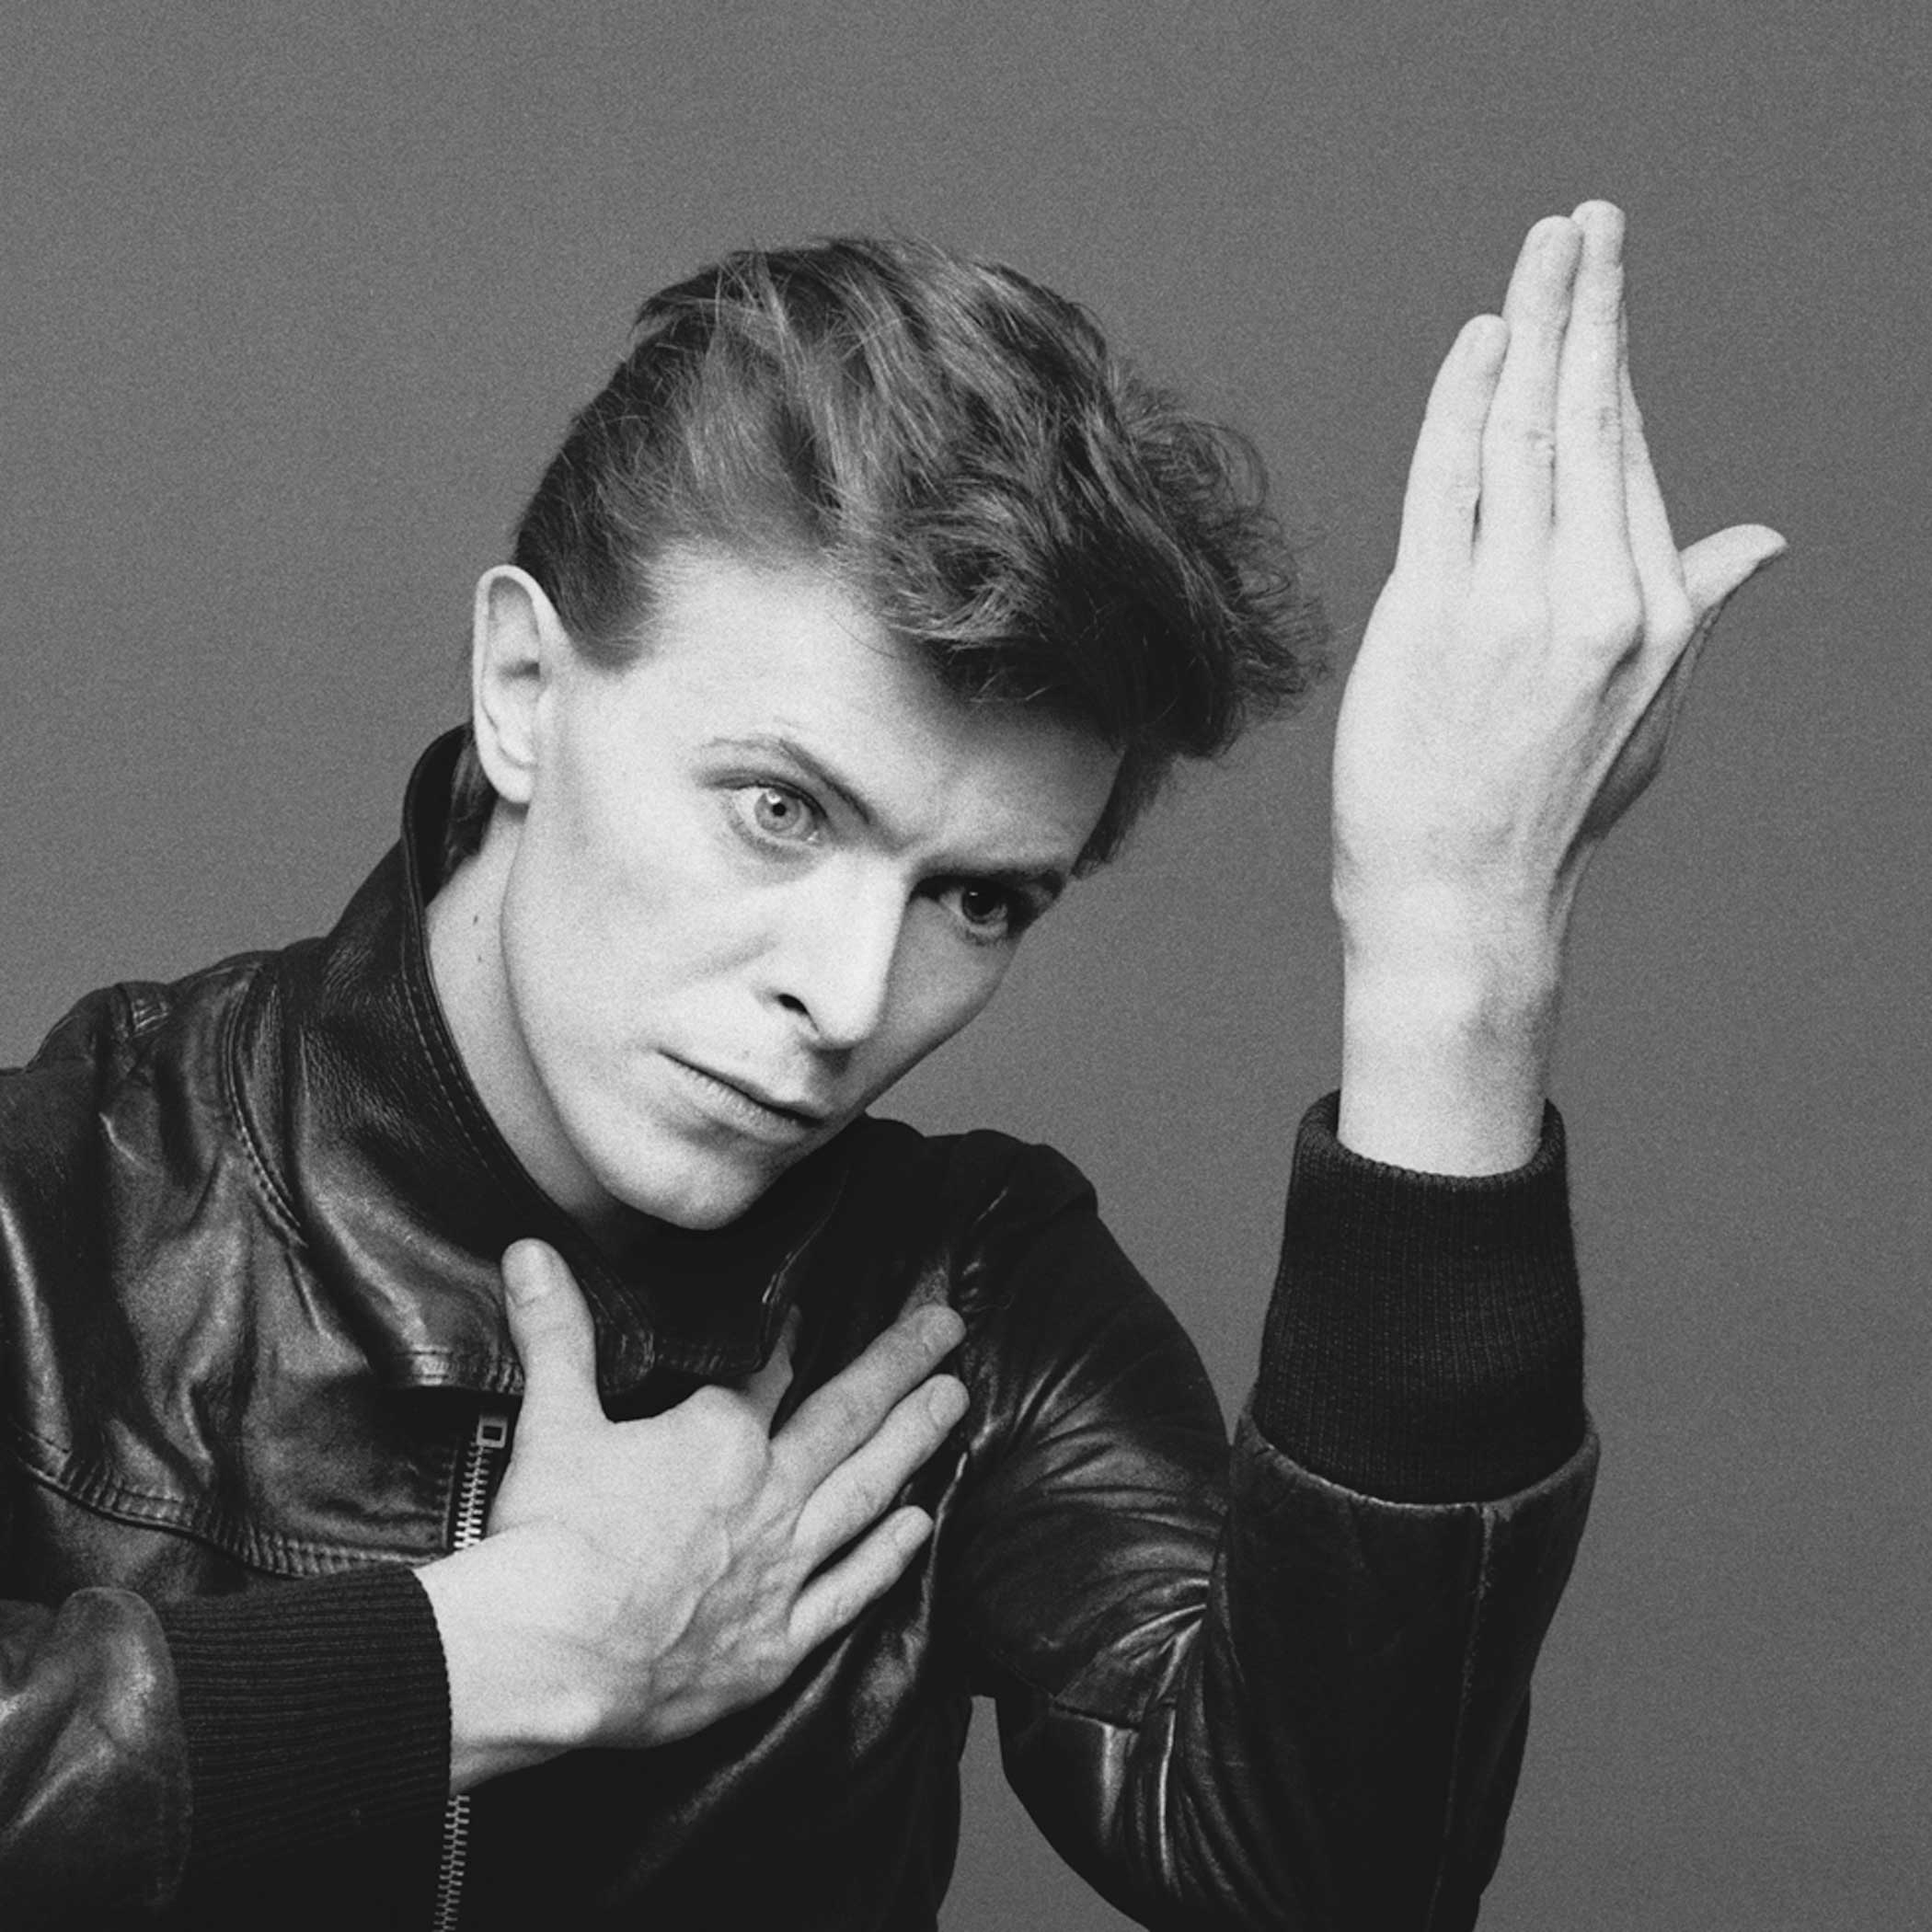 David Bowie, "Heroes," 1977.